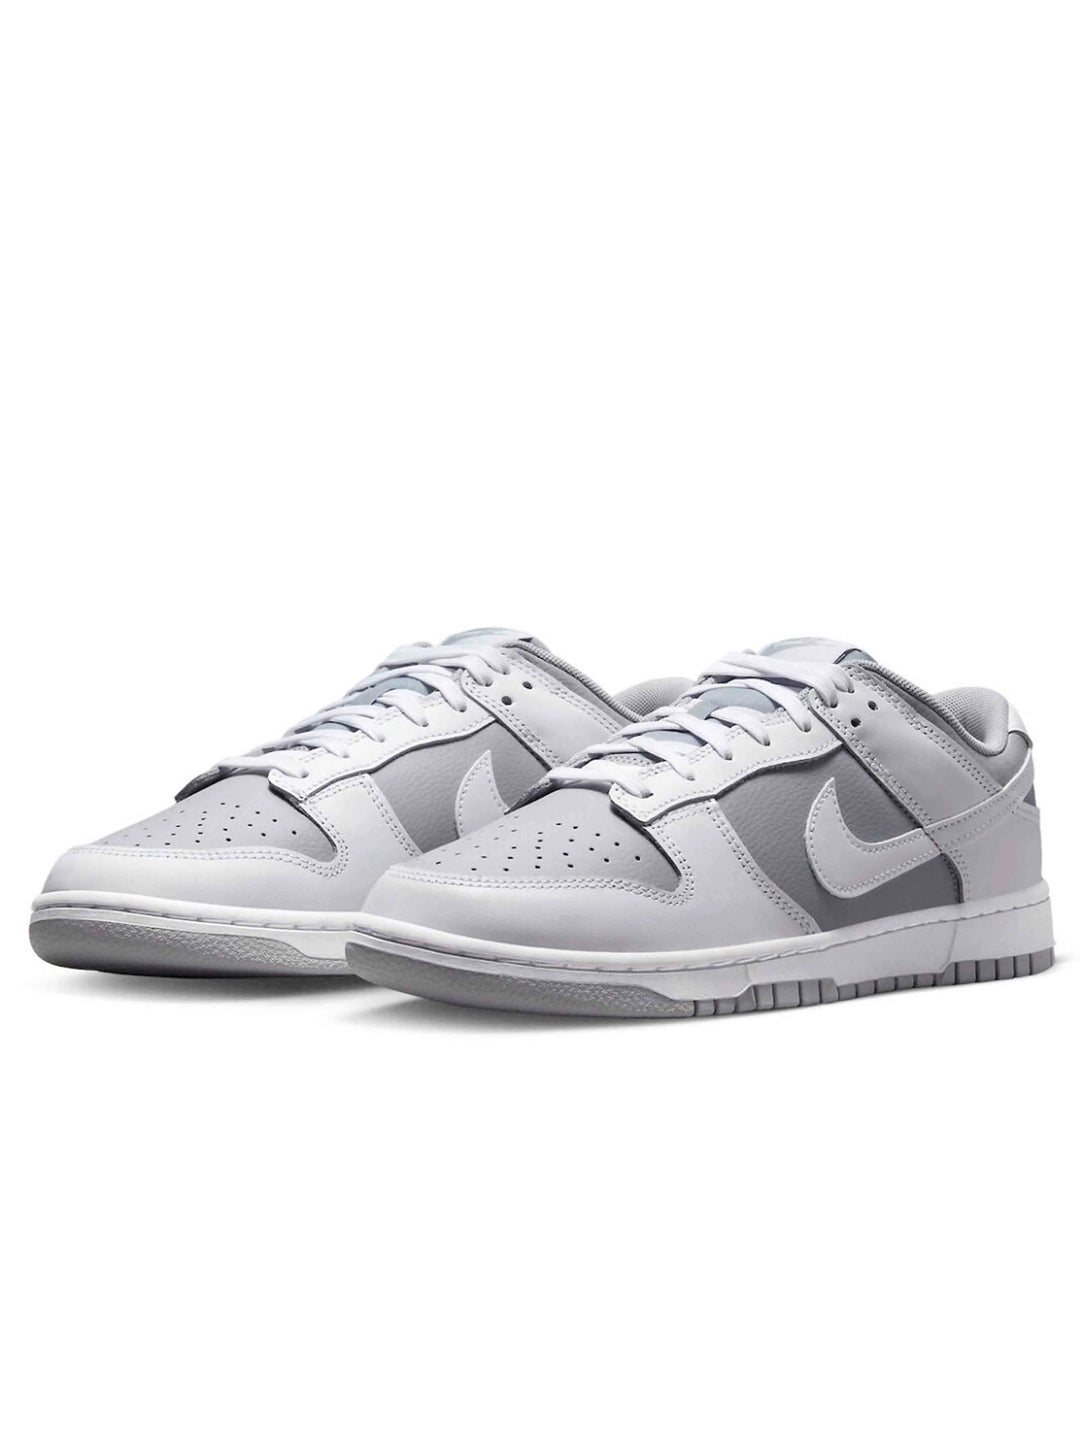 Nike Dunk Low Retro White Grey Nike